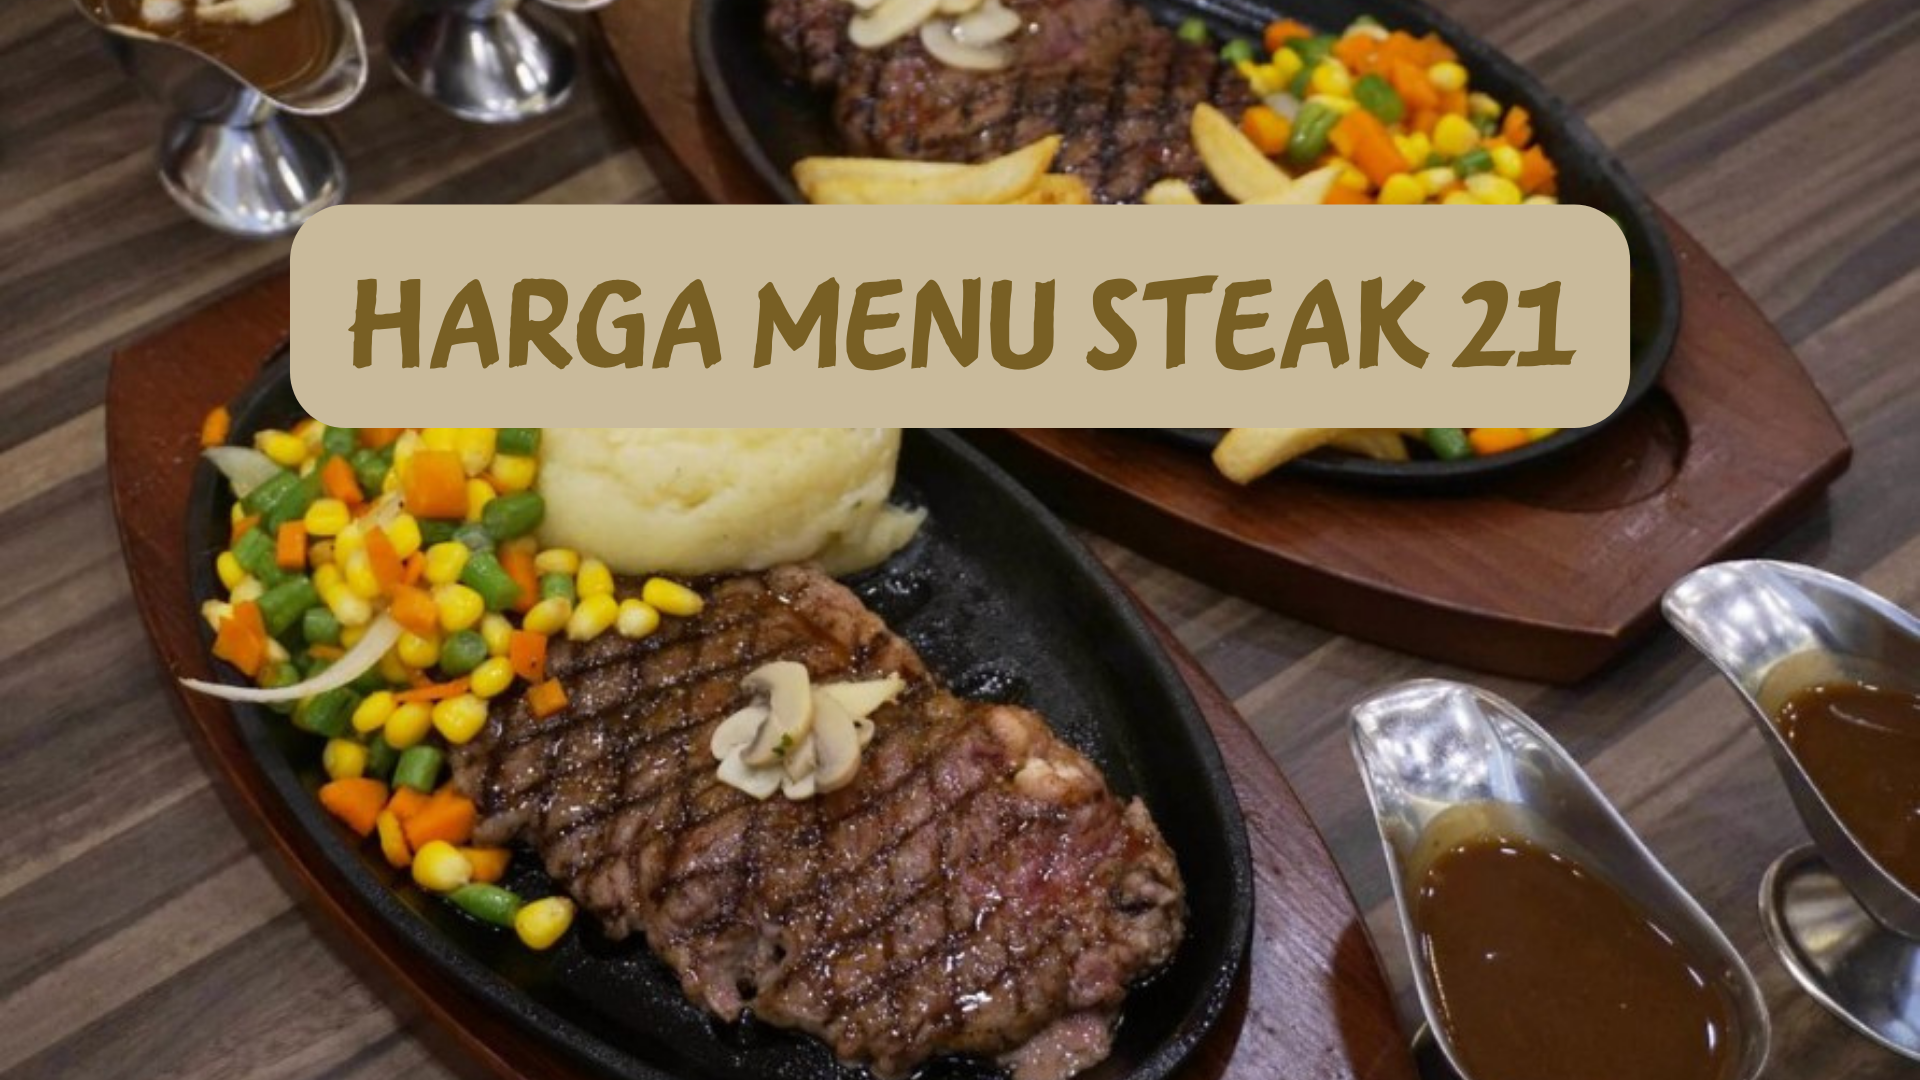 Harga menu Steak 21 perlu Anda ketahui sebelum masak untuk makan ke kedai tersebut. Maka Anda simak berikut ini.